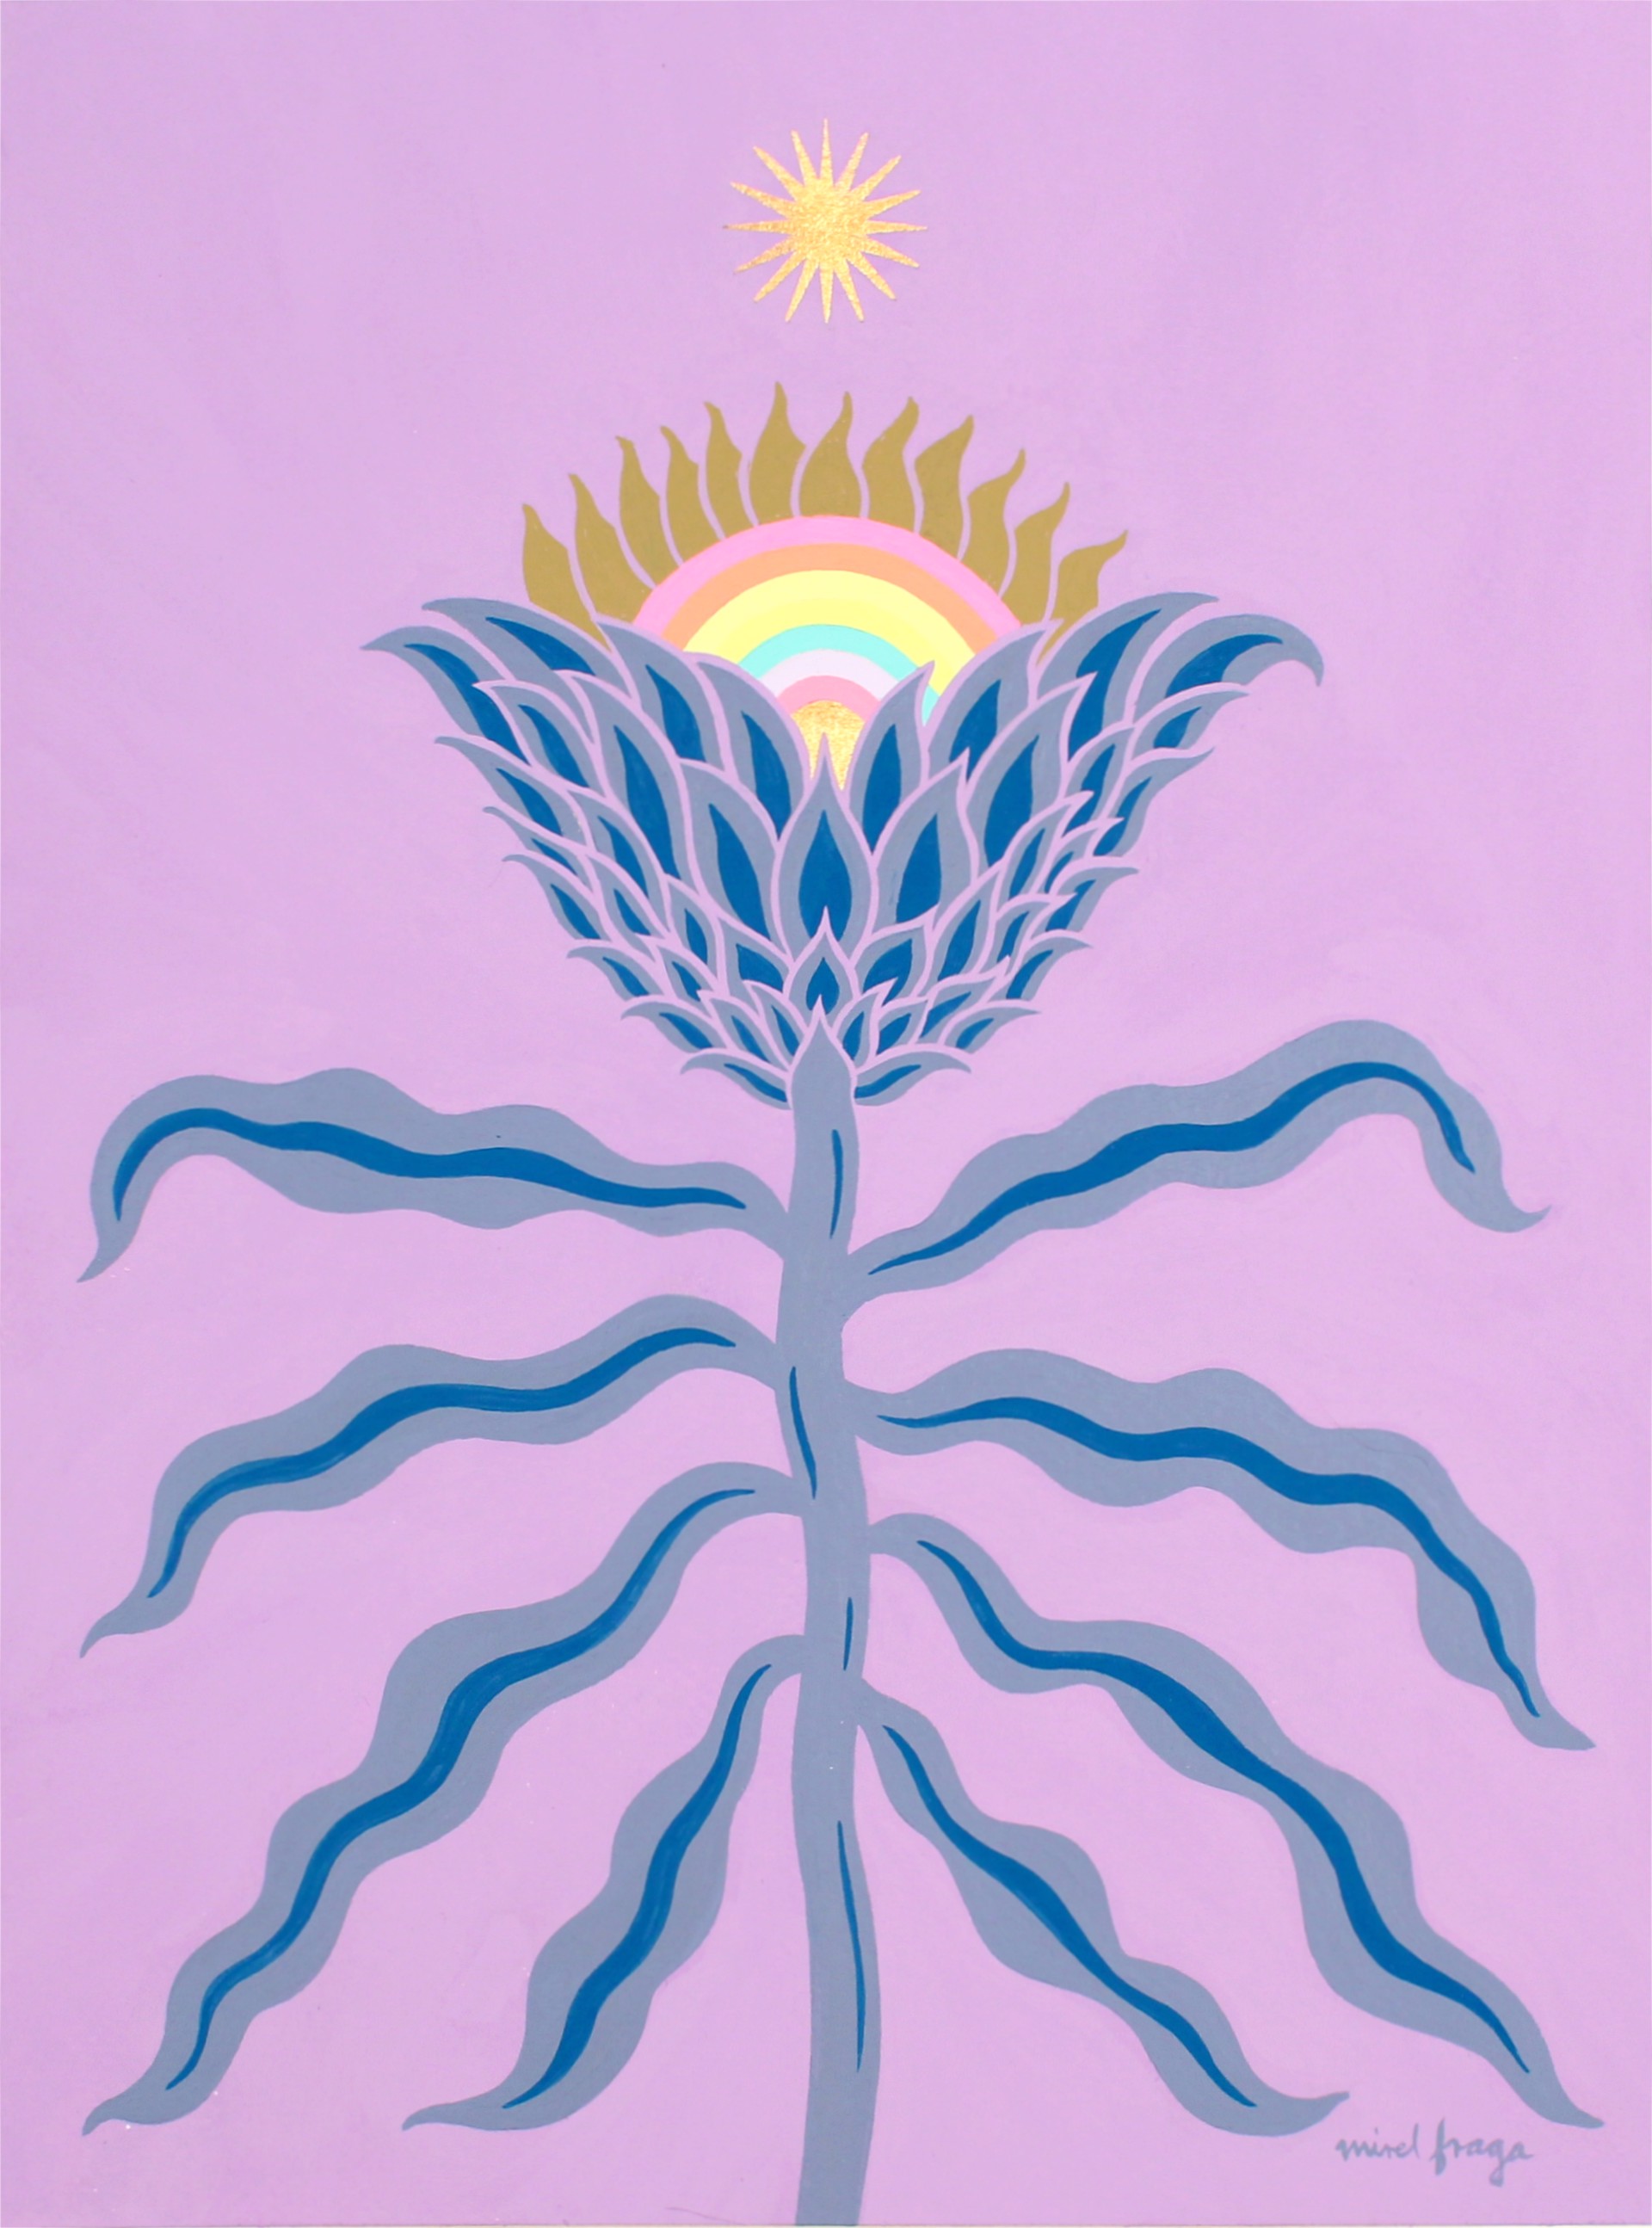 Temple of flora 1 (Artichoke protea) by Mirel Fraga